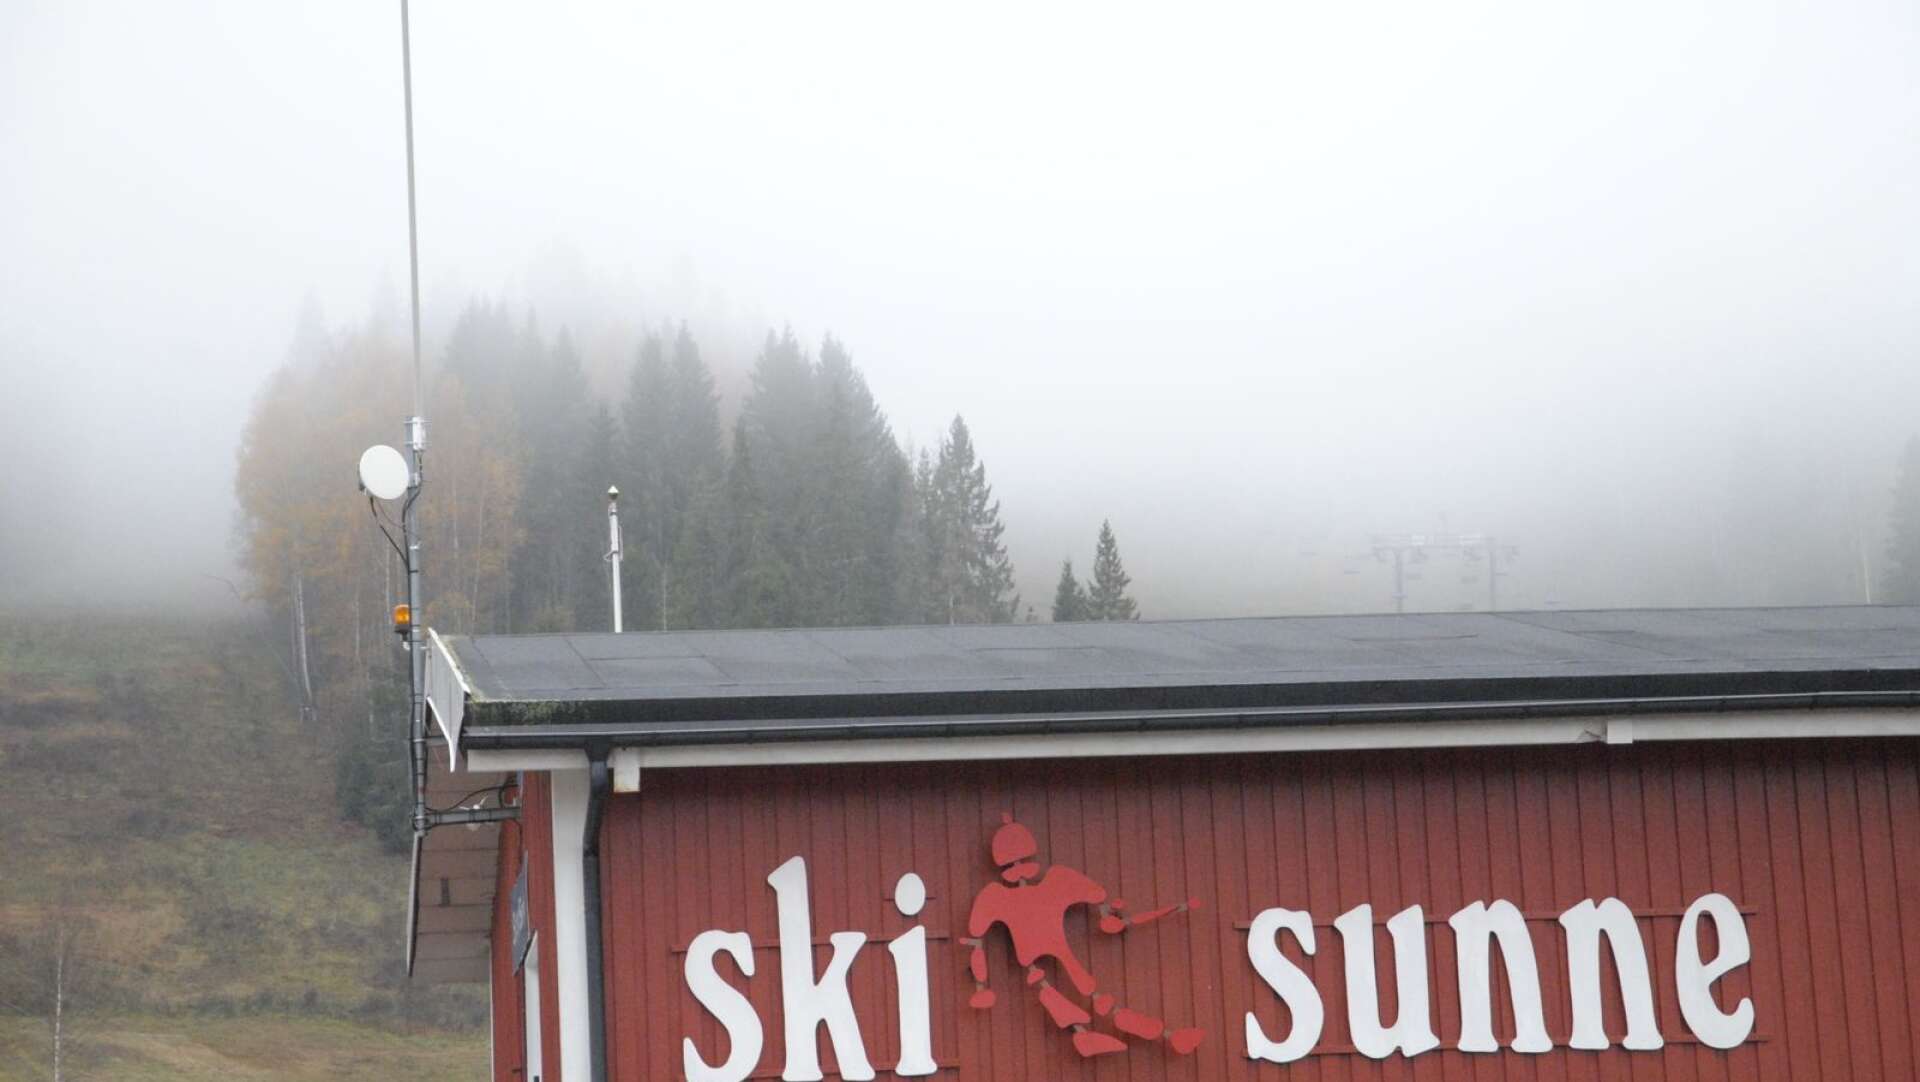 Ski Sunne gör snö sedan i morse. Redan i morgon kan utförsåkarna boka säsongskort och sätta press på priserna.